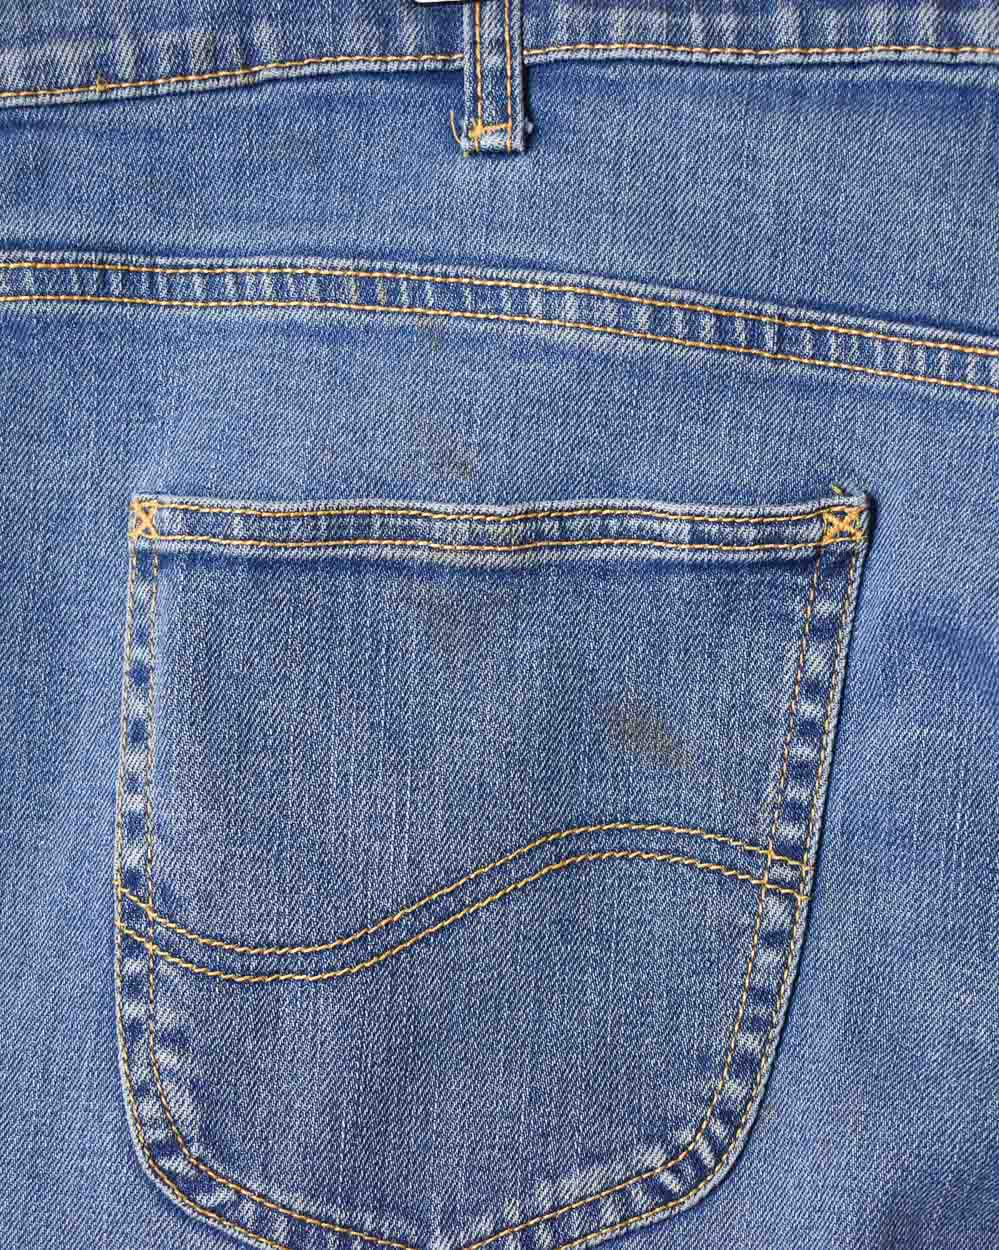 Blue Lee Jeans - W36 L27